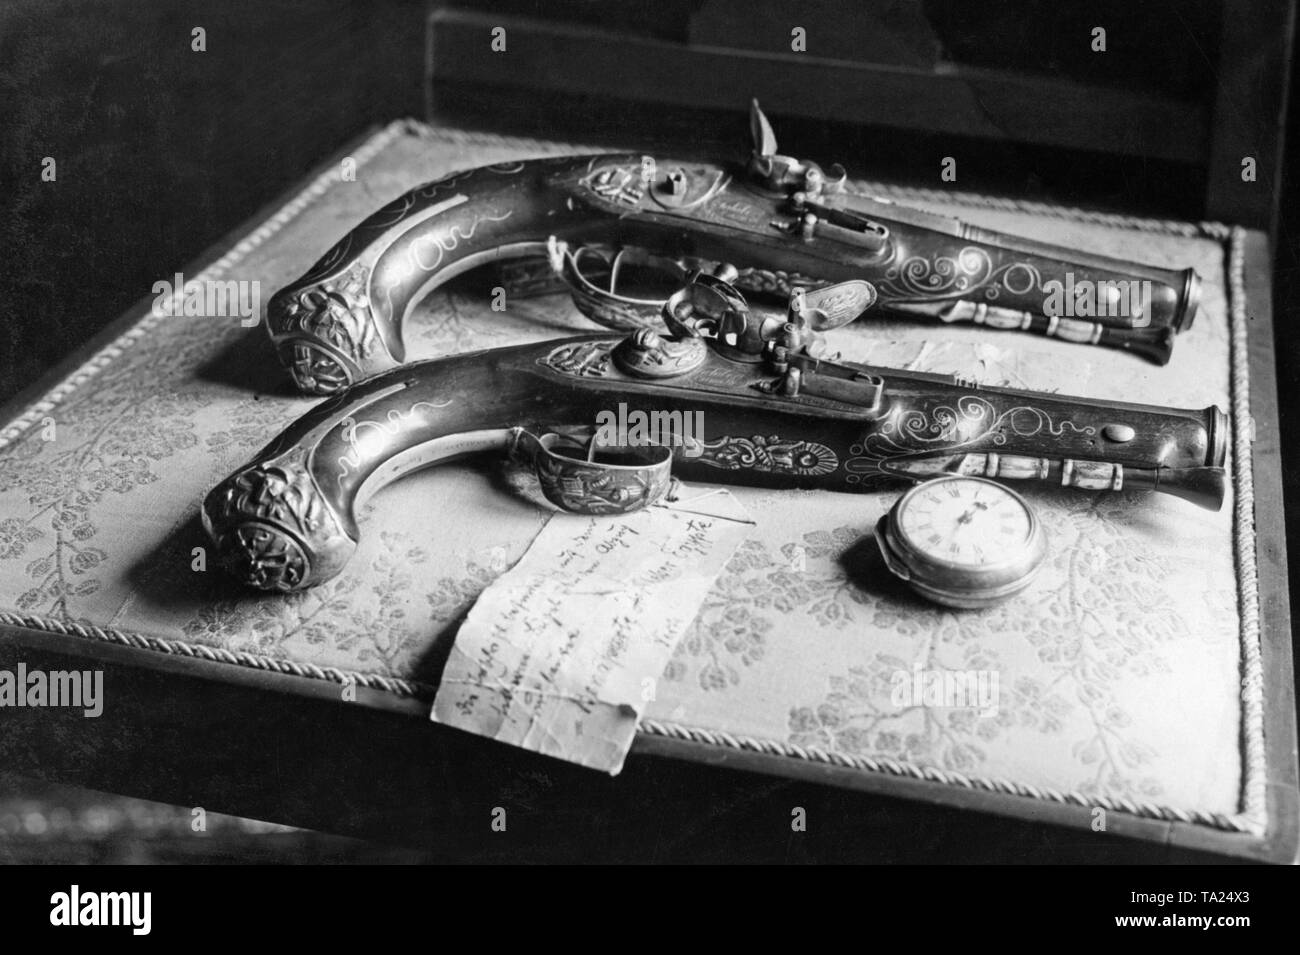 Una coppia di flintlock pistols con ricchi di argento i raccordi dall'inizio del XVIII secolo (il dono di Napoleone I al generale Kleber). Di fronte, l'orologio da tasca di Federico il Grande. Foto Stock